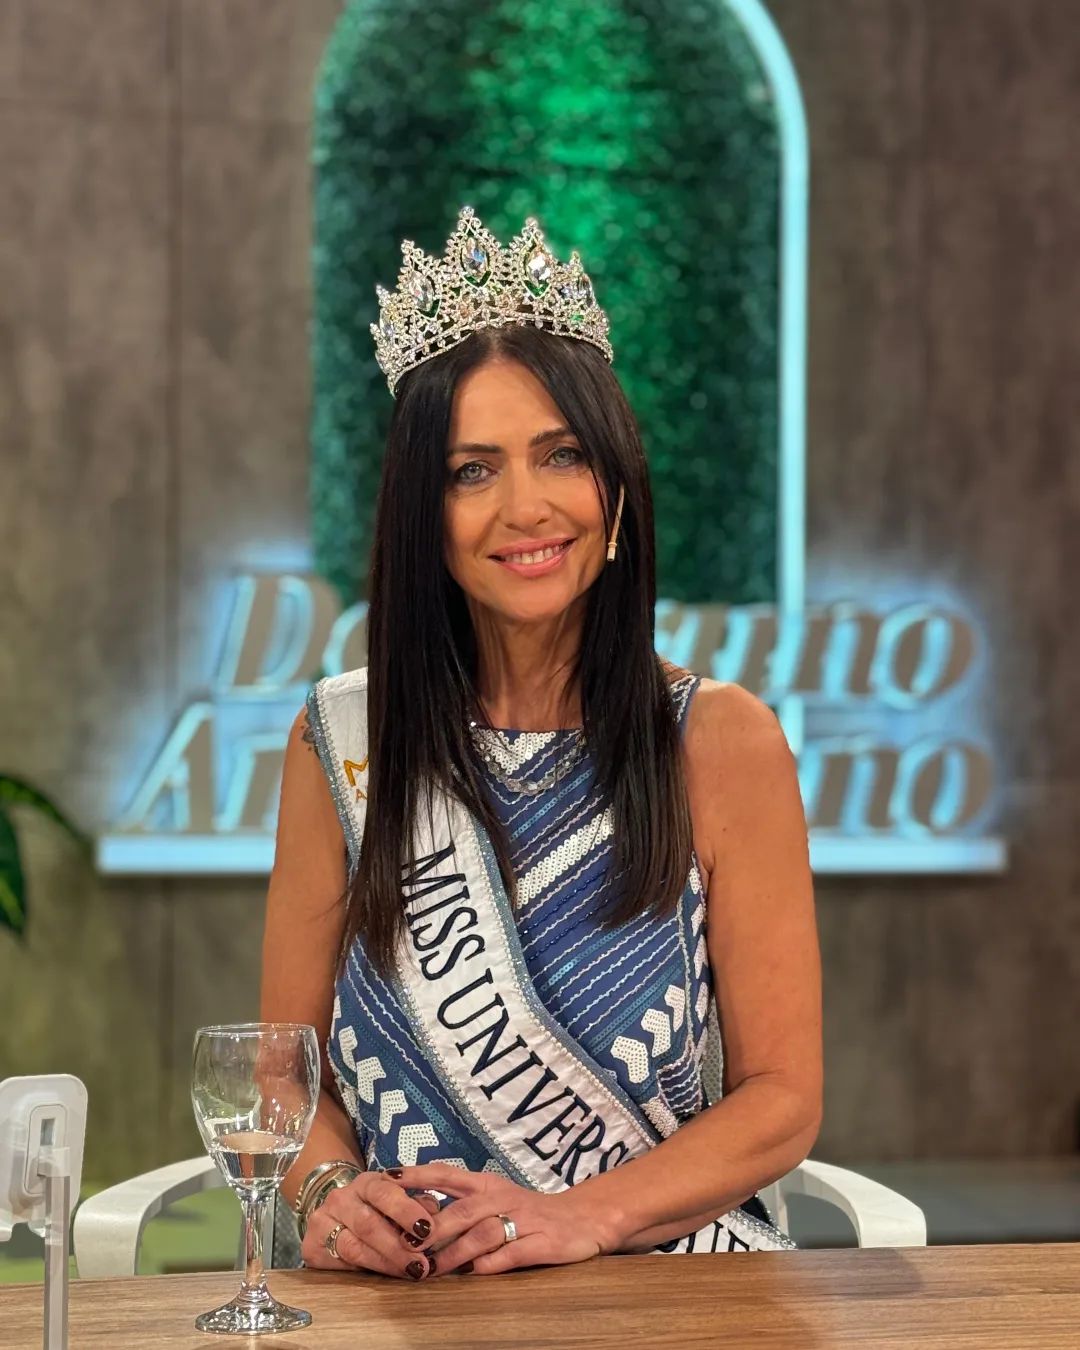 Quem é a argentina de 60 anos que pode ser candidata ao Miss Universo